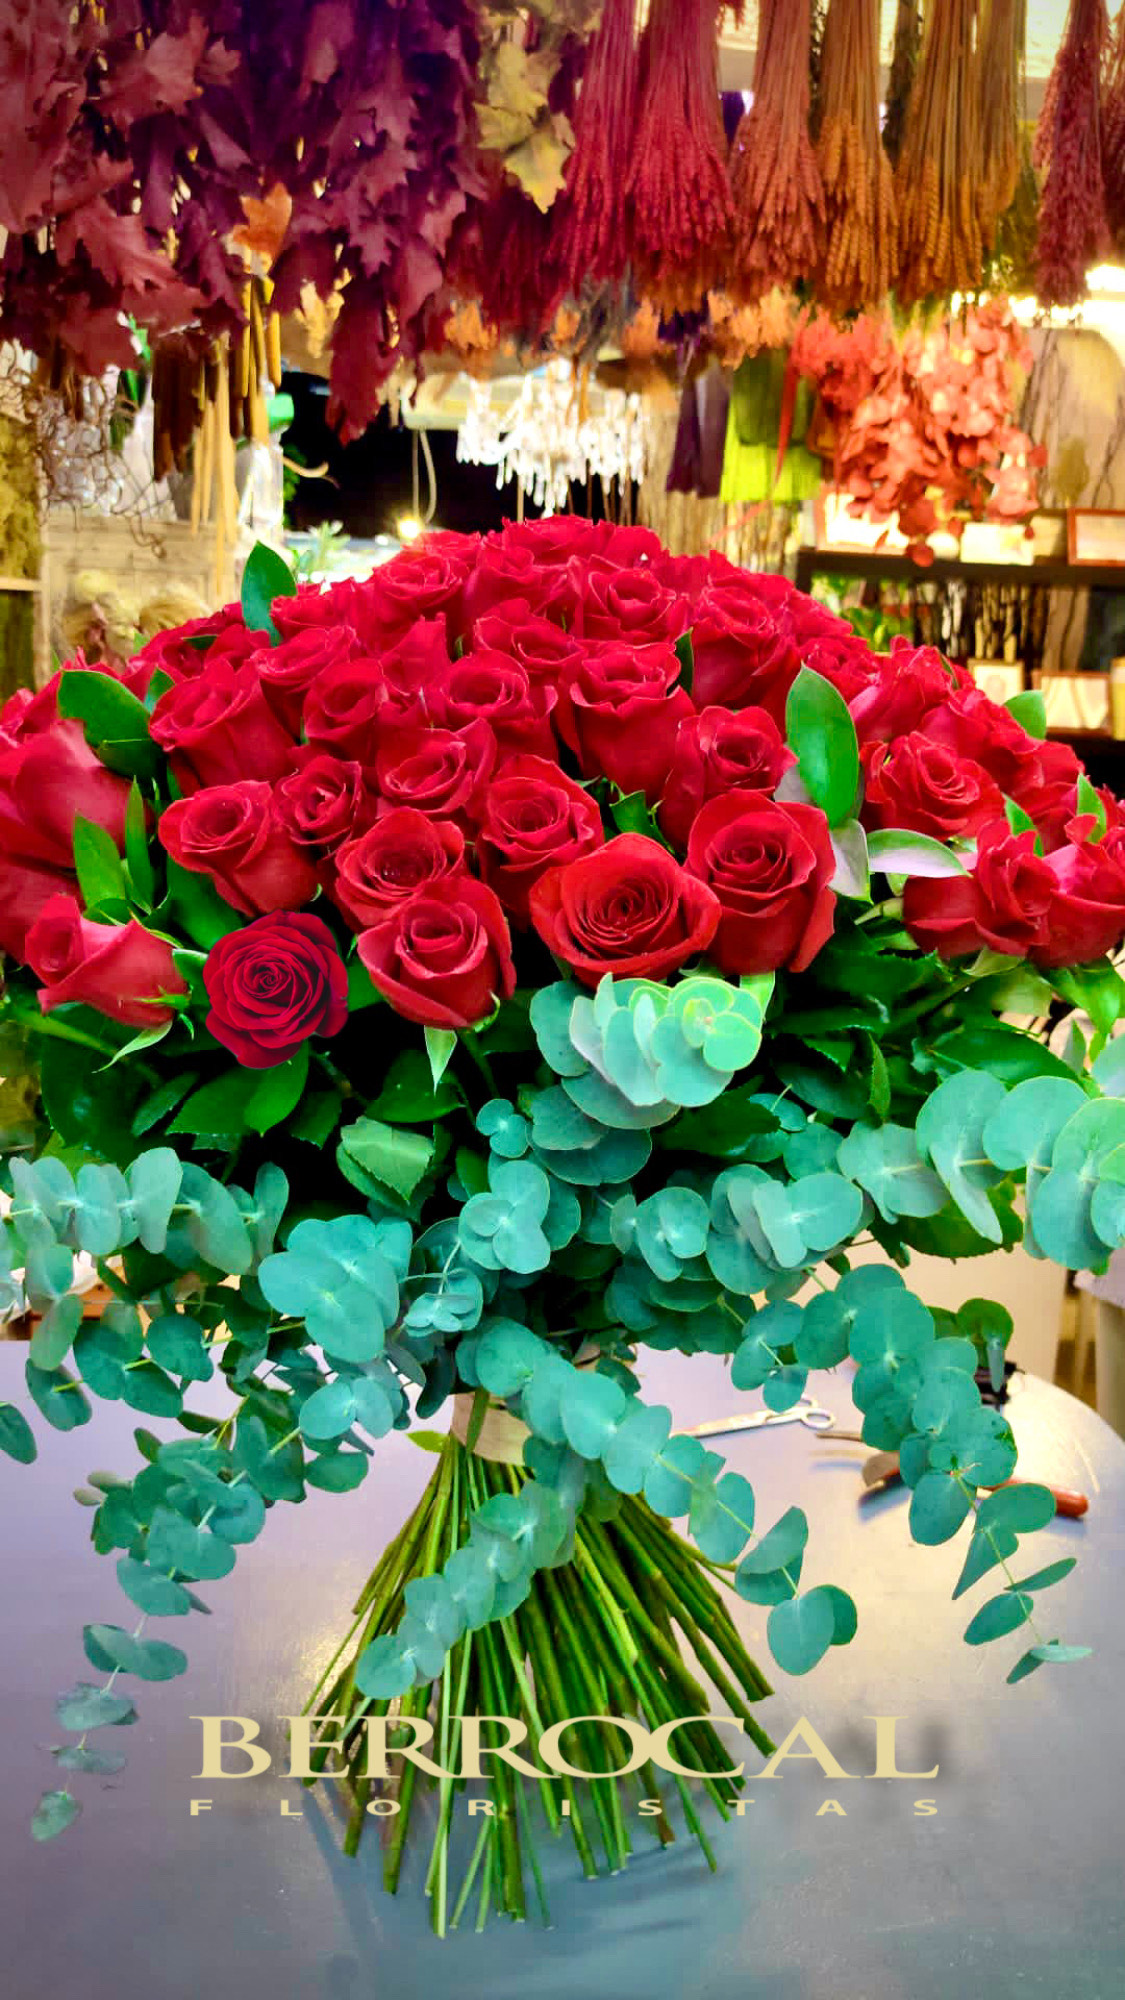 ? Floristerías en Marbella enviar flores a domicilio Marbella Berrocal